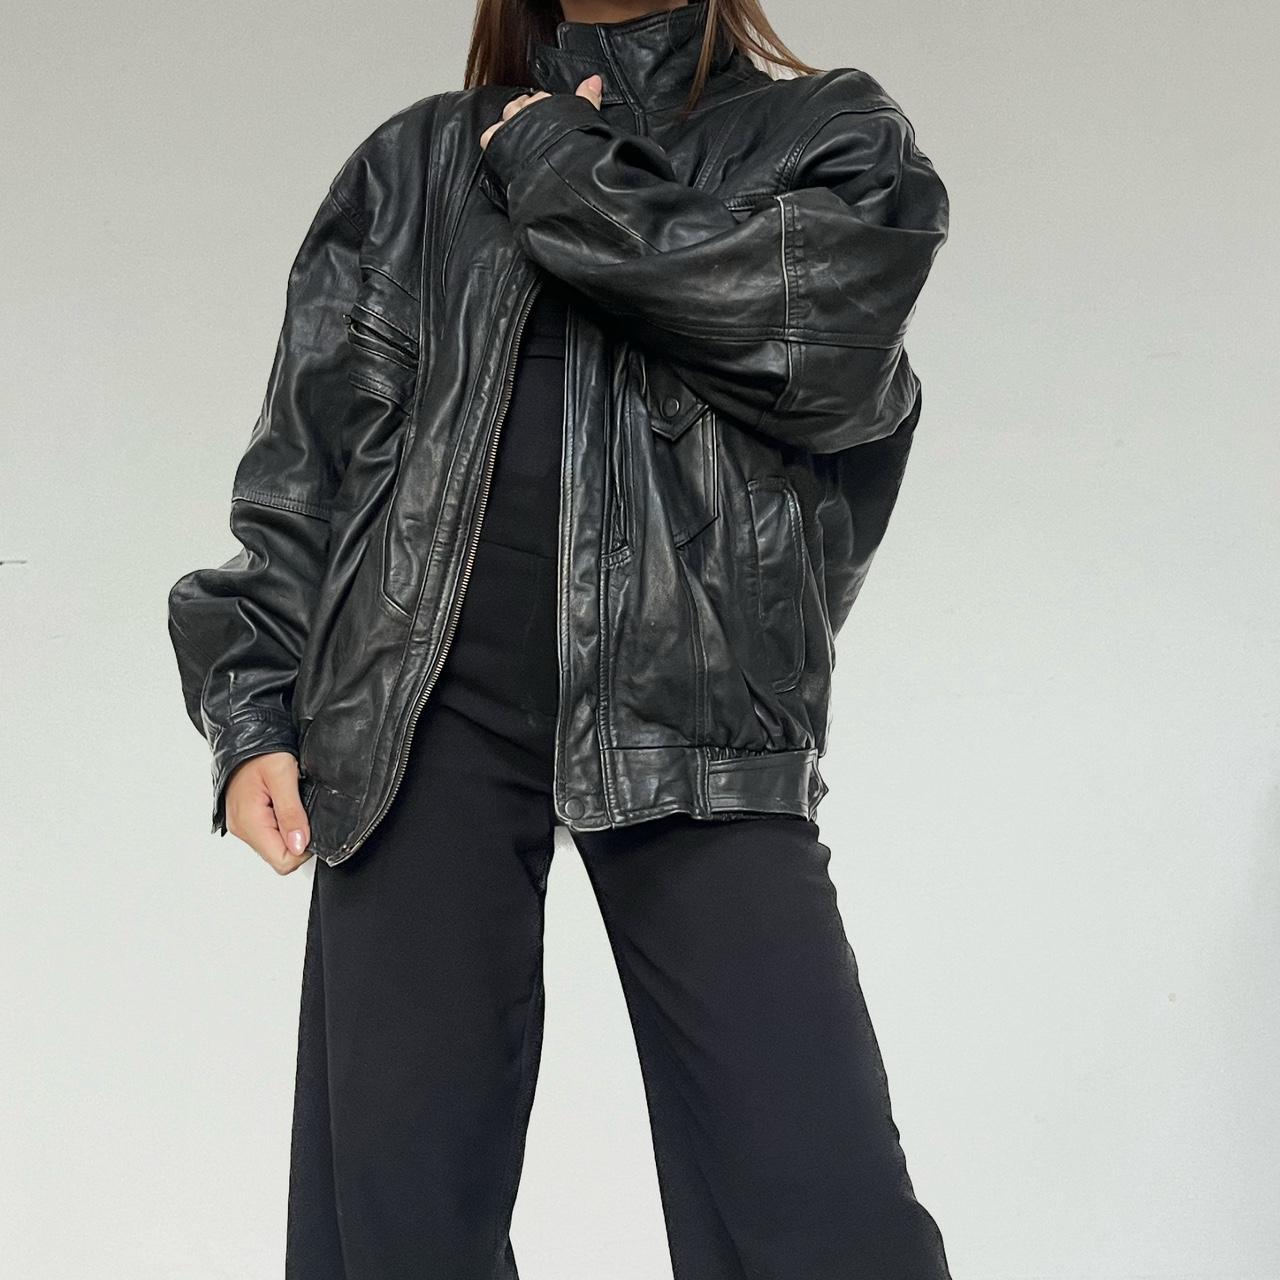 Vintage 90s real Black leather bomber jacket vintage... - Depop